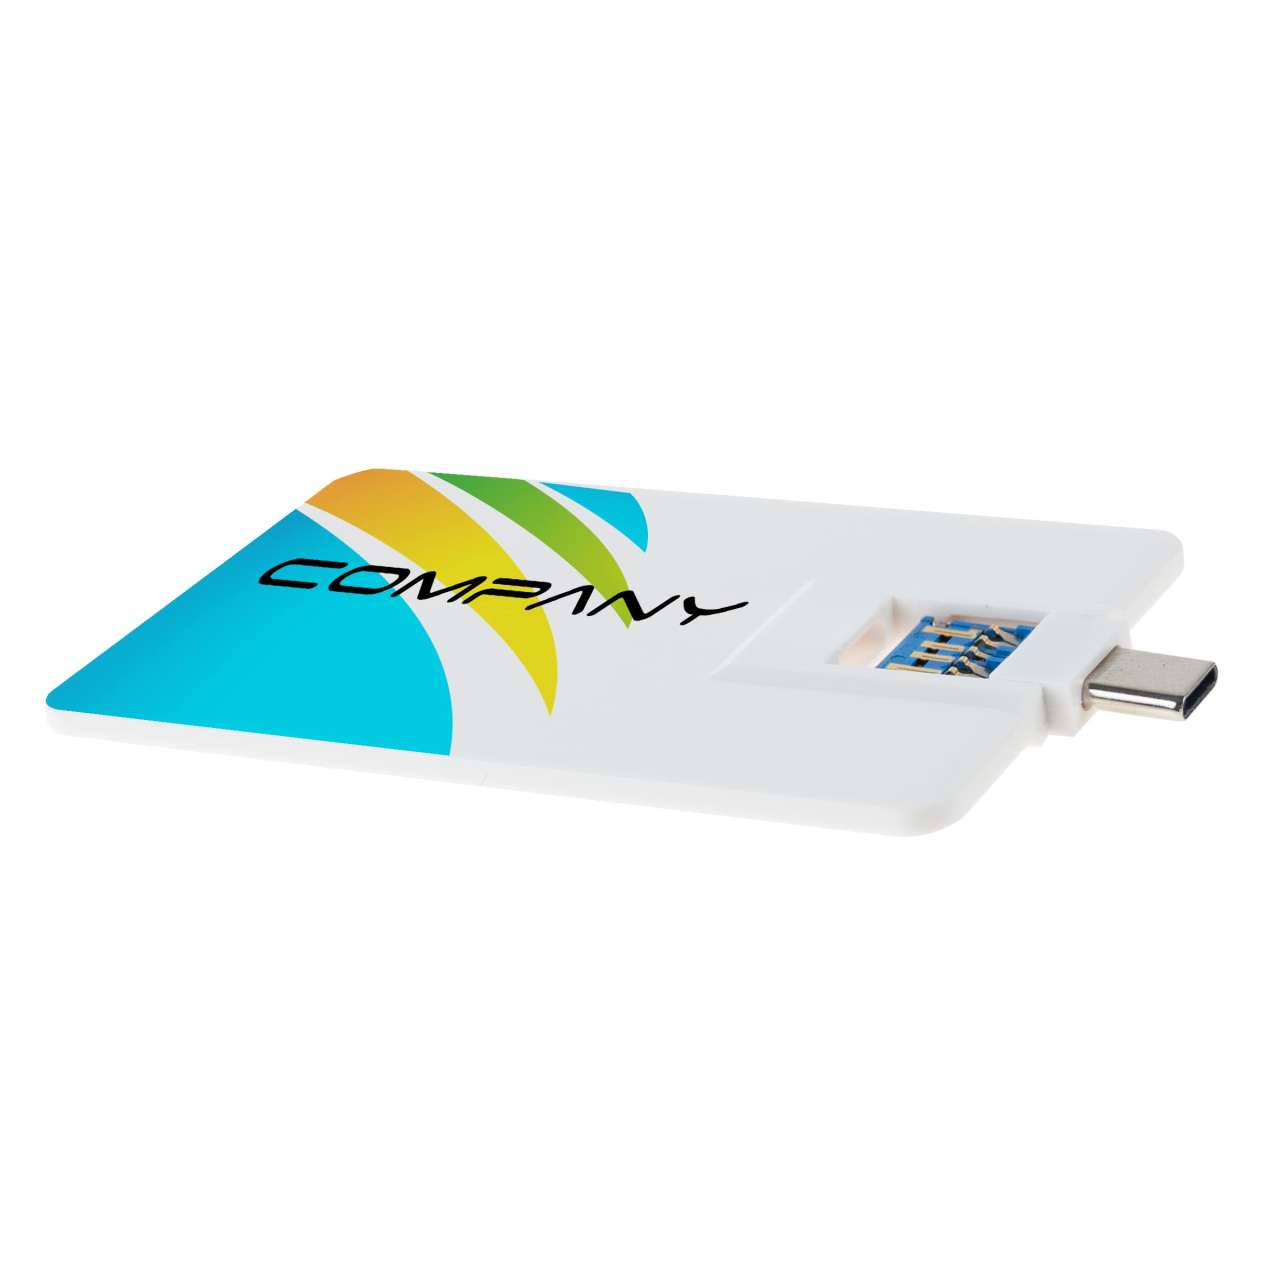 USB Stick Credit Card 3.0 Type-C, Premium